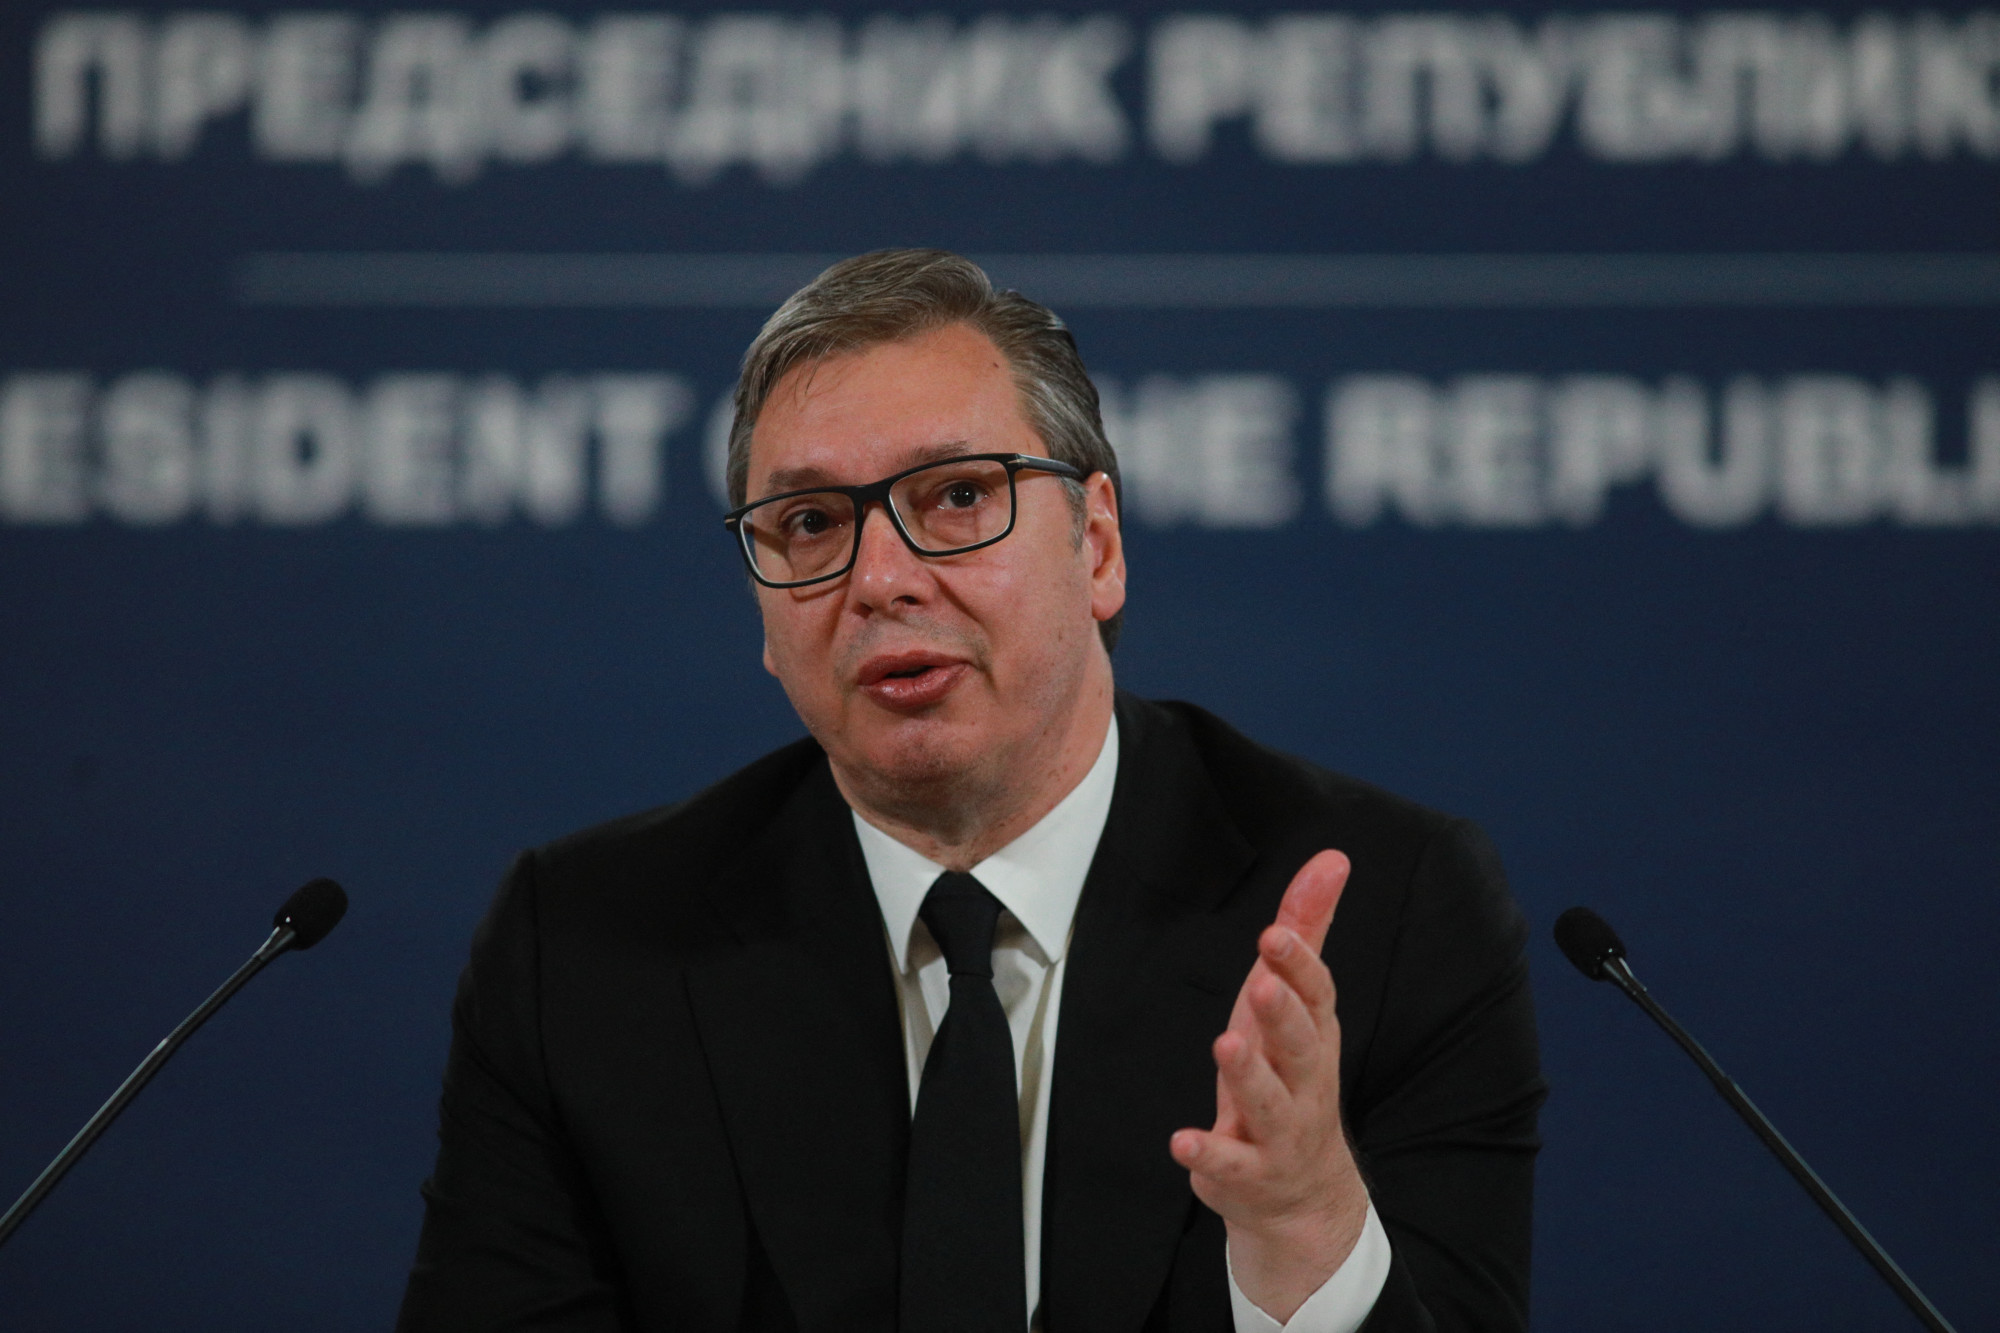 Vučićot nem zavarja, hogy közvetítőkön keresztül szerb lőszerek kerülnek az ukránokhoz